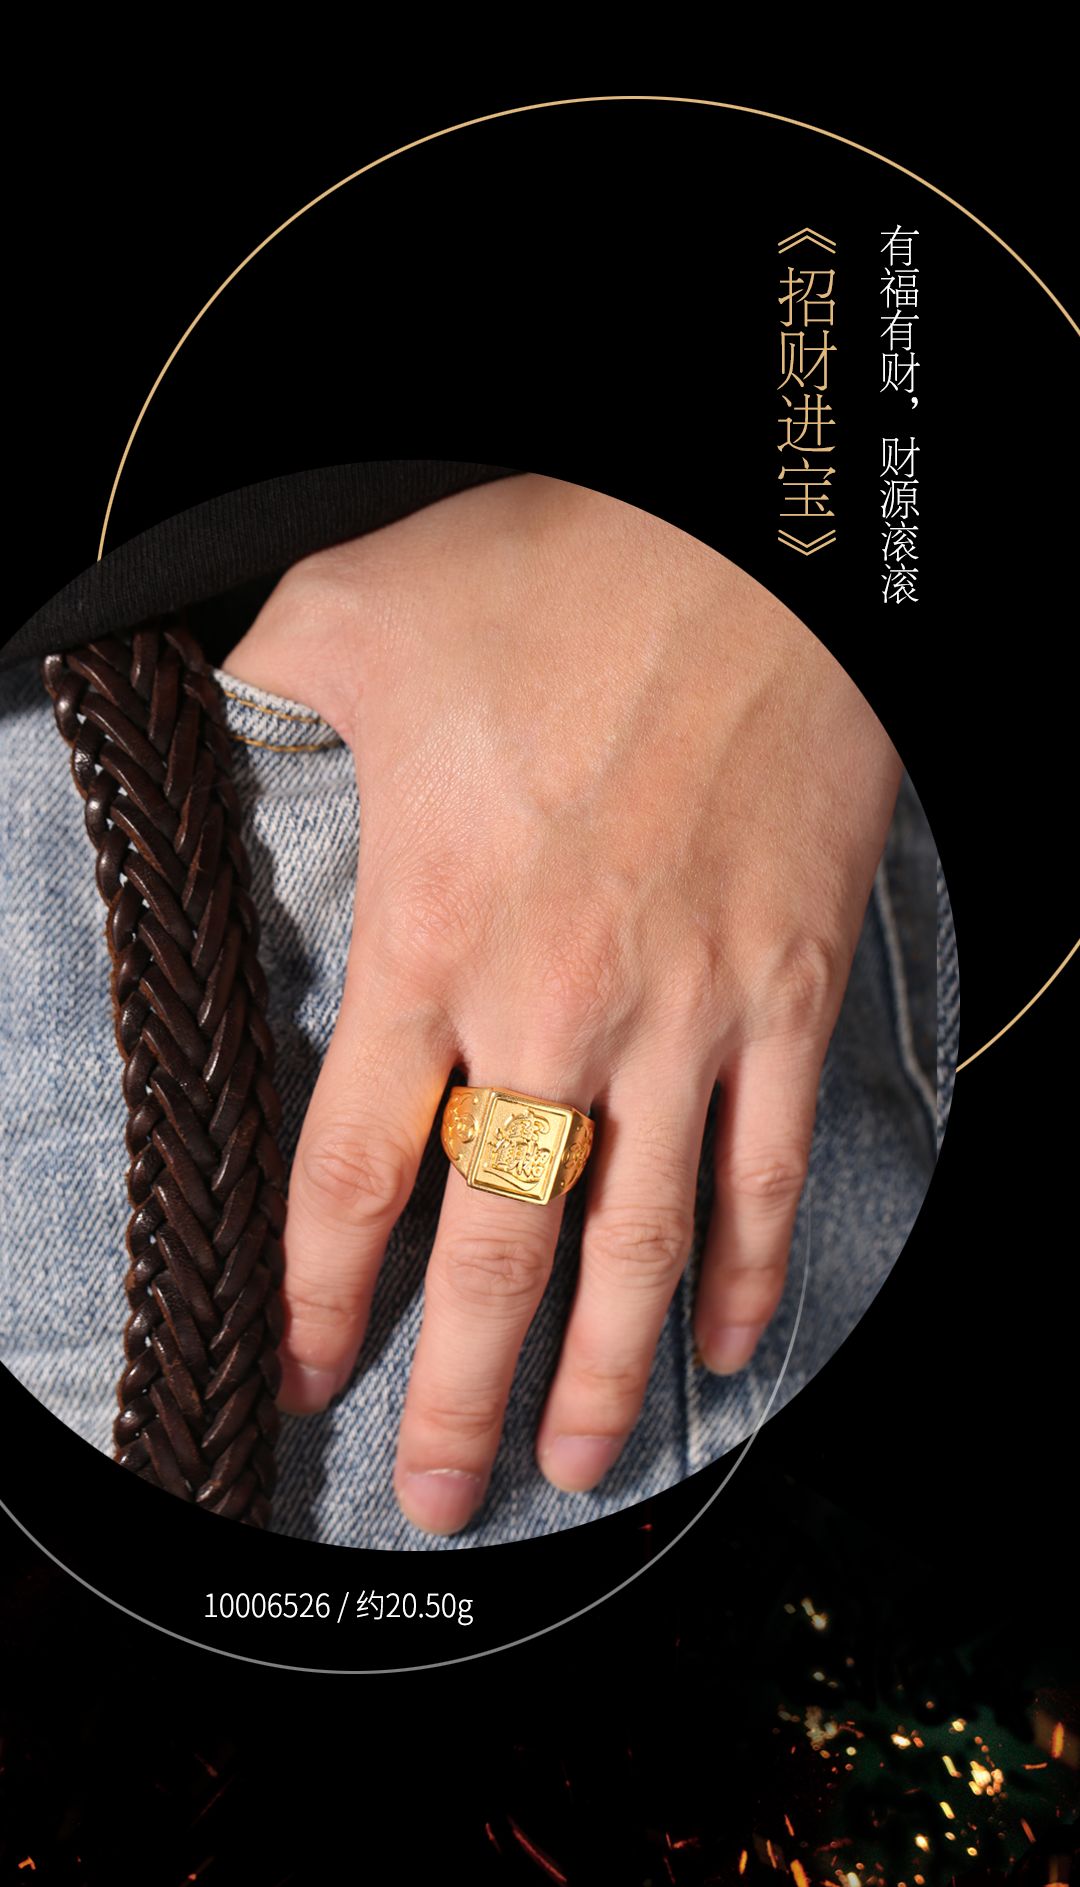 新品吉语男戒属于男士的古法祥瑞金戒指